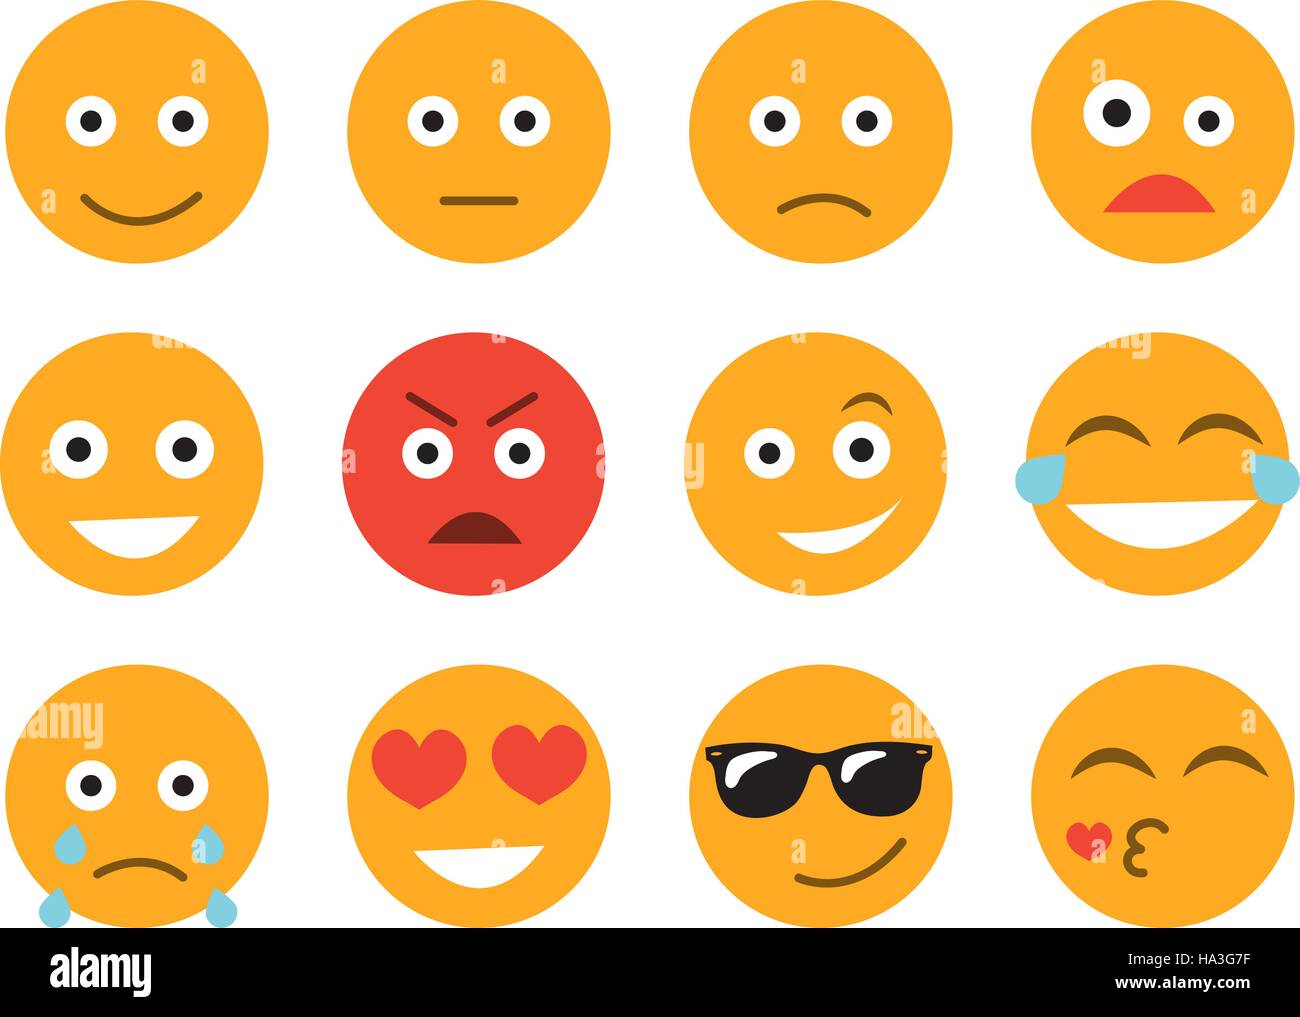 Emoticon-Vektor-Illustration. Smiley-Gesicht auf einem weißen Hintergrund gesetzt. Verschiedene Emotionen Sammlung Stock Vektor